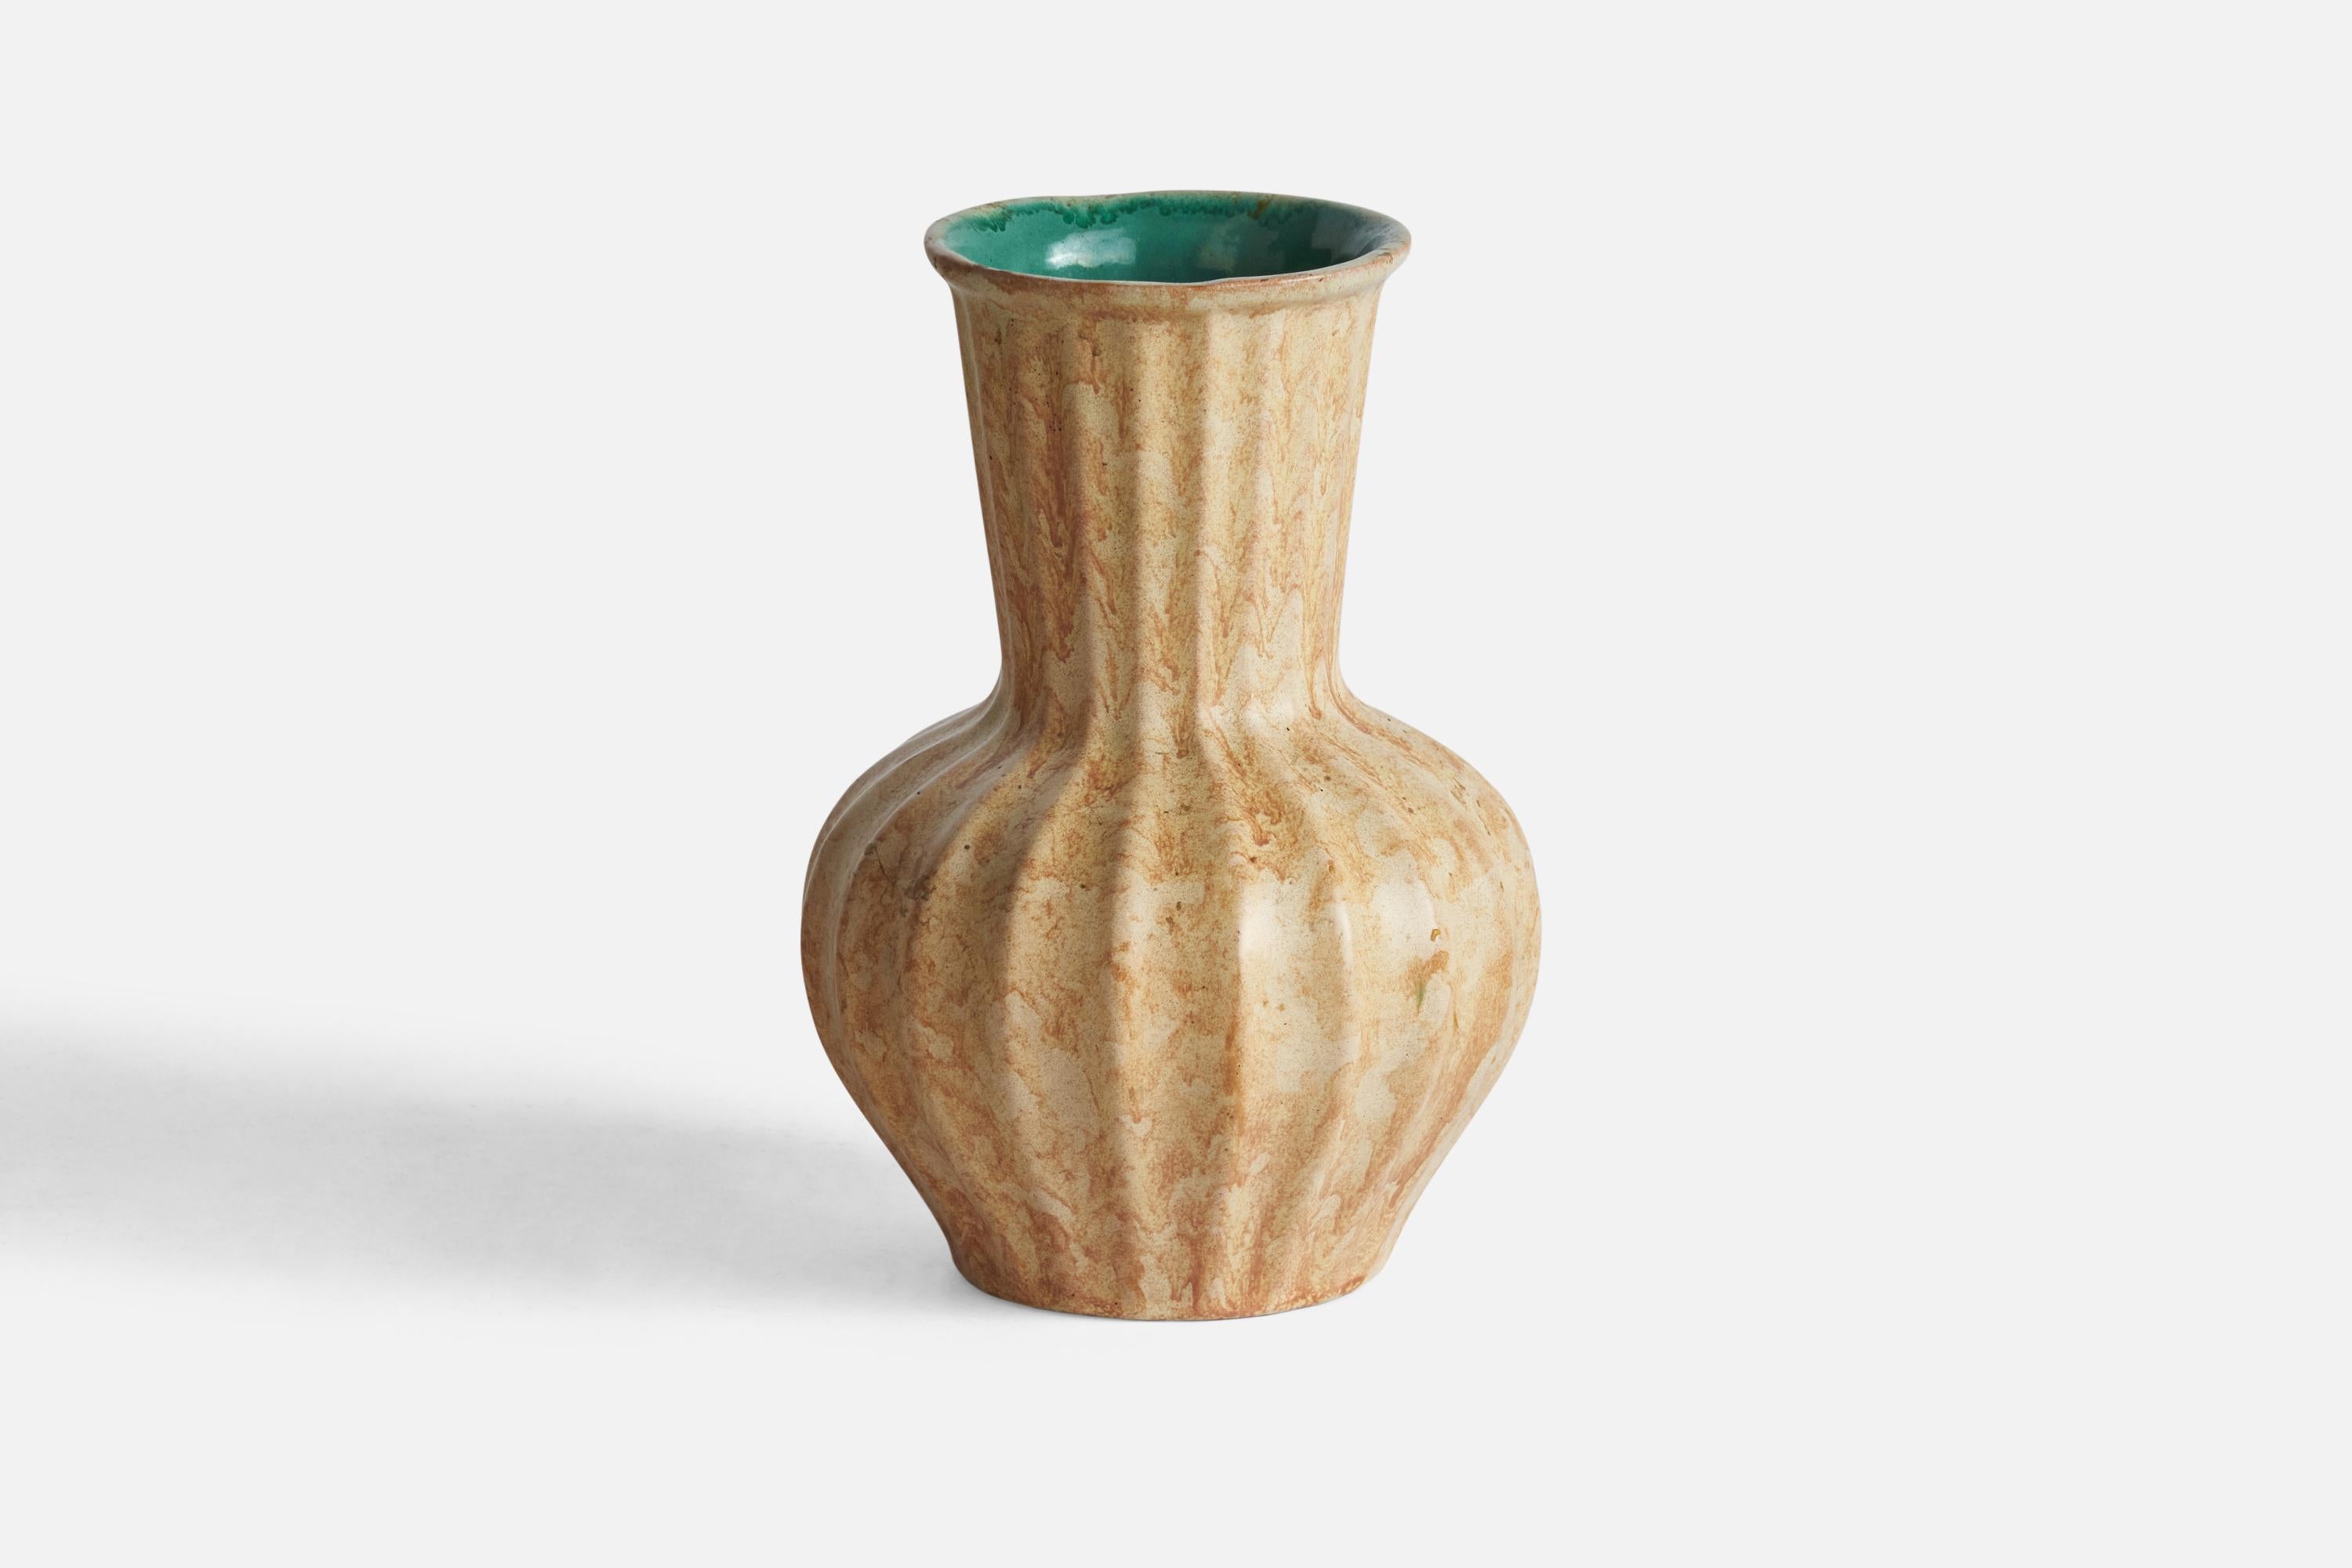 Geriffelte beige und grün glasierte Vase aus Steingut, entworfen und hergestellt von Upsala Ekeby, Schweden, 1930er Jahre.